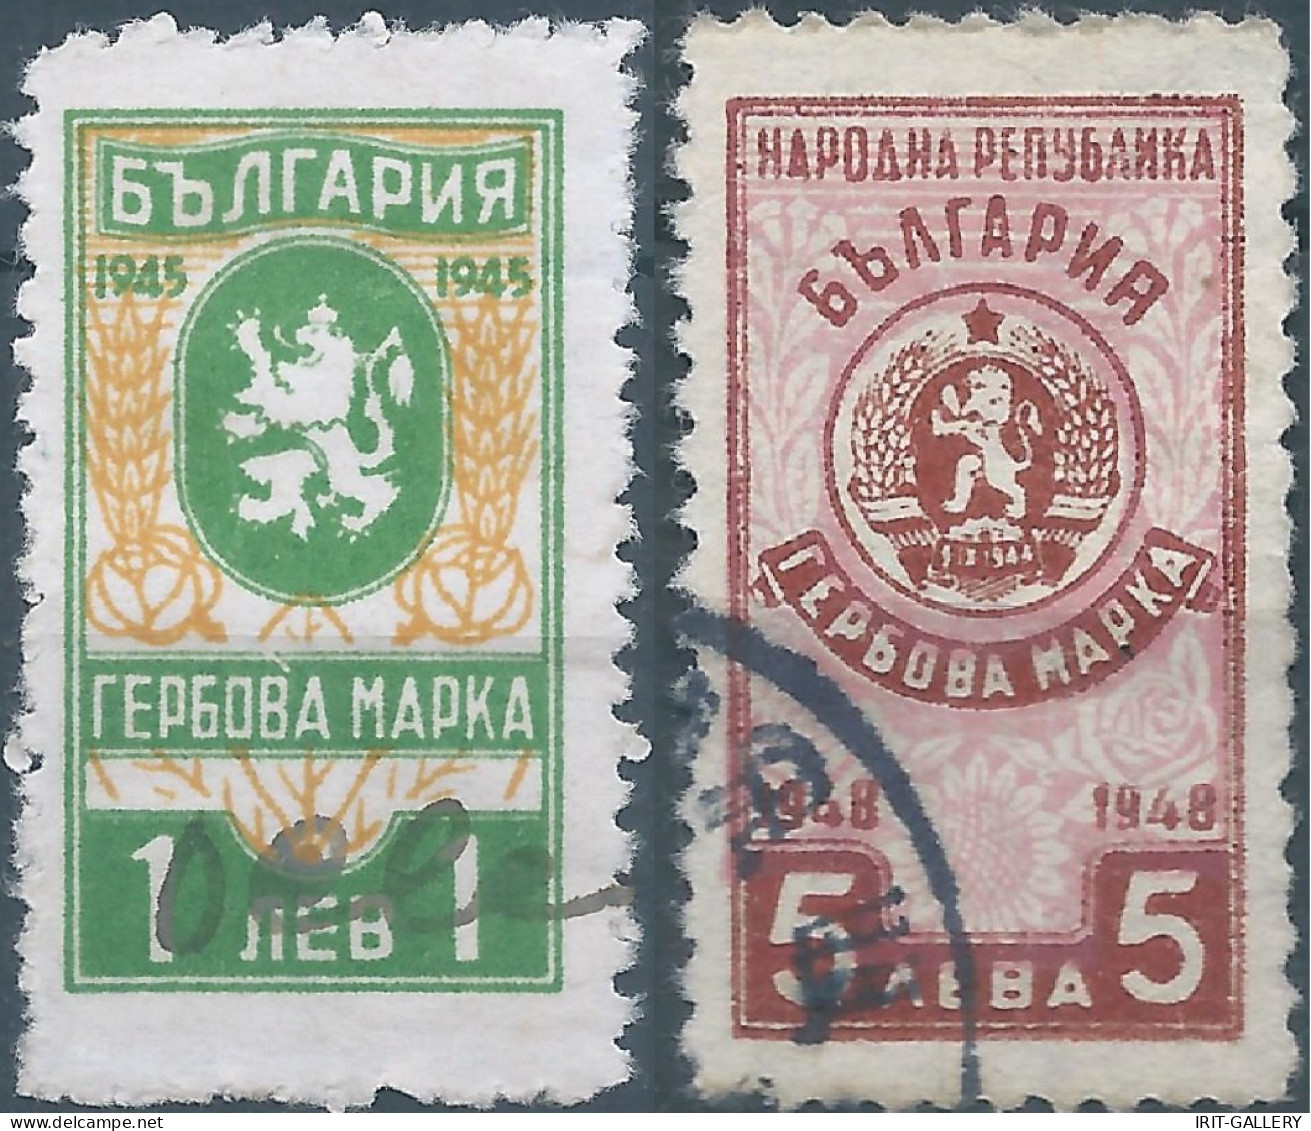 Bulgaria - Bulgarien - Bulgare,1945 - 1948 Revenue Stamps Fiscal Tax,Obliterated - Timbres De Service